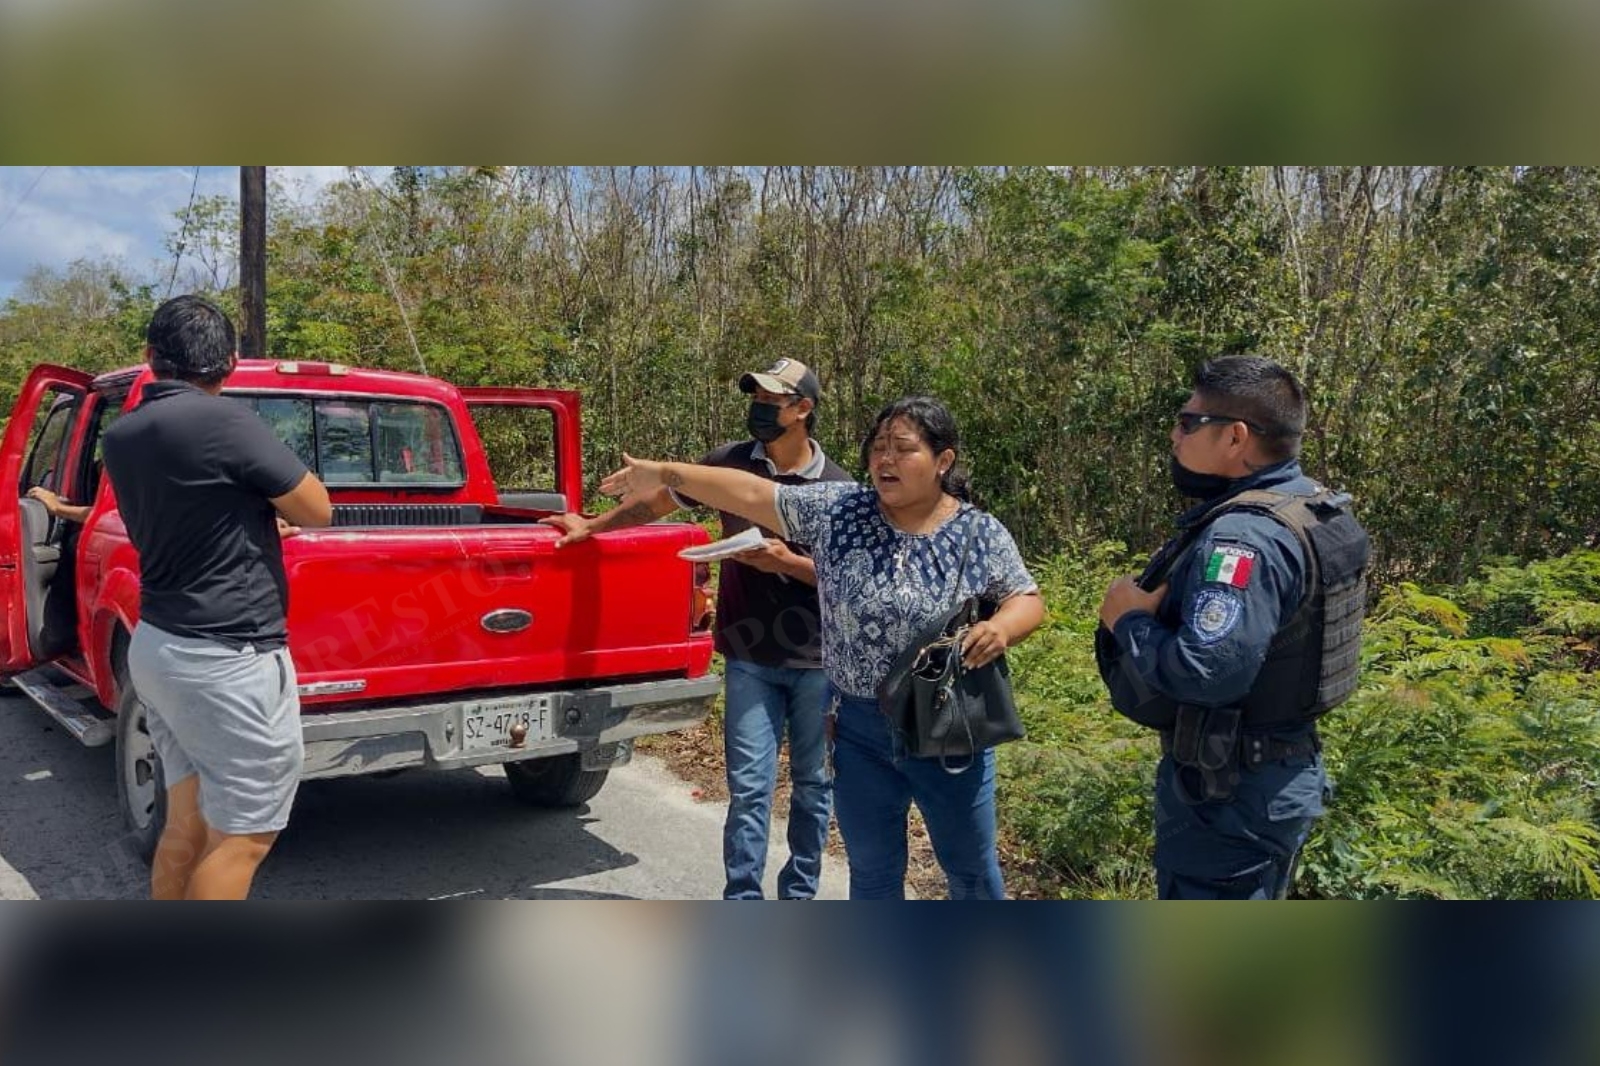 Al verificar que no había armas de por medios, los policías de Cozumel instaron a los quejosos a acudir a las instancias correspondientes